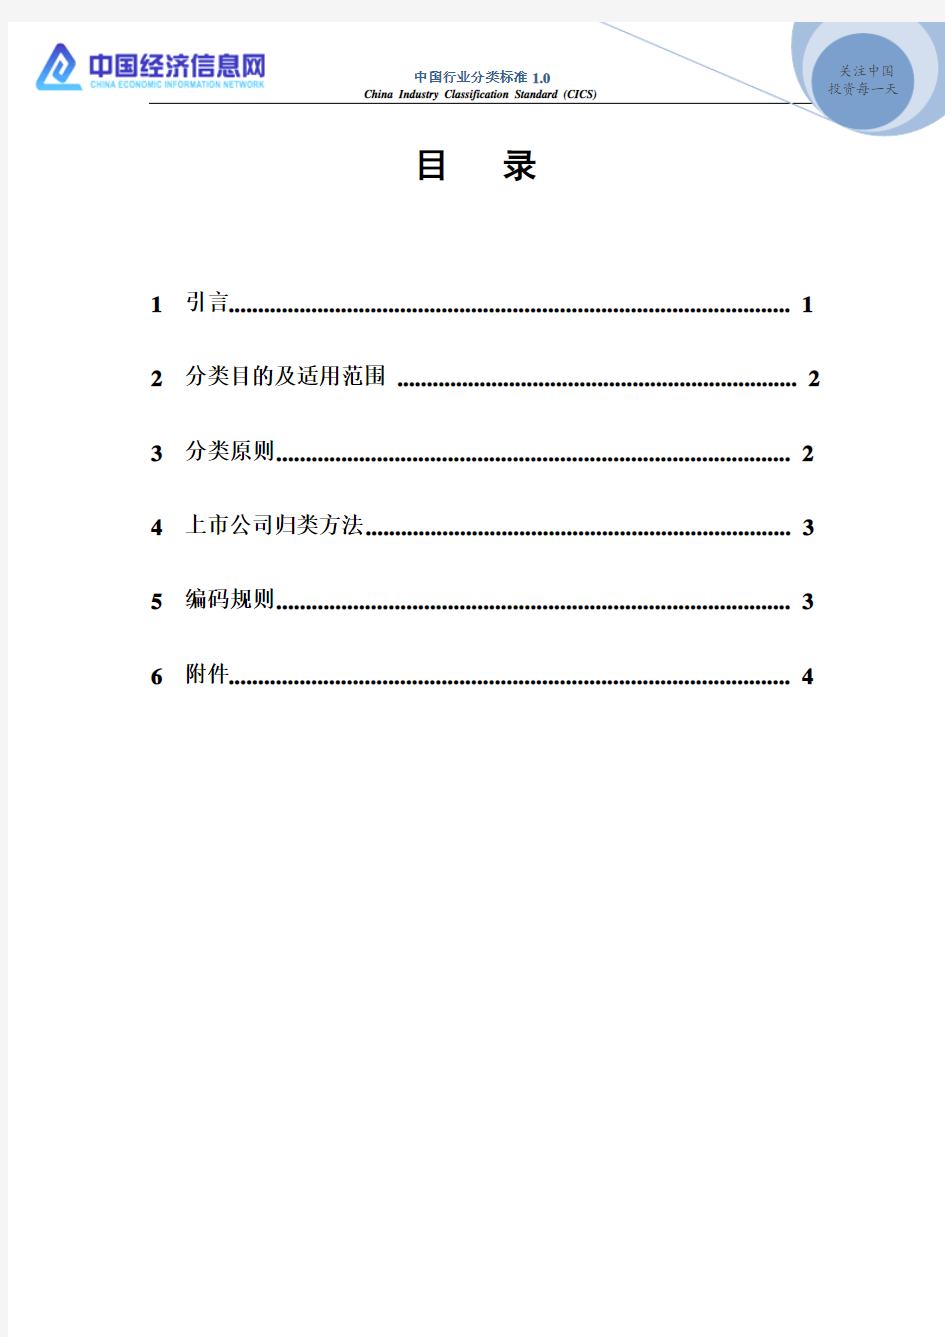 中国行业分类标准1.0版(CICS)(2012.8)